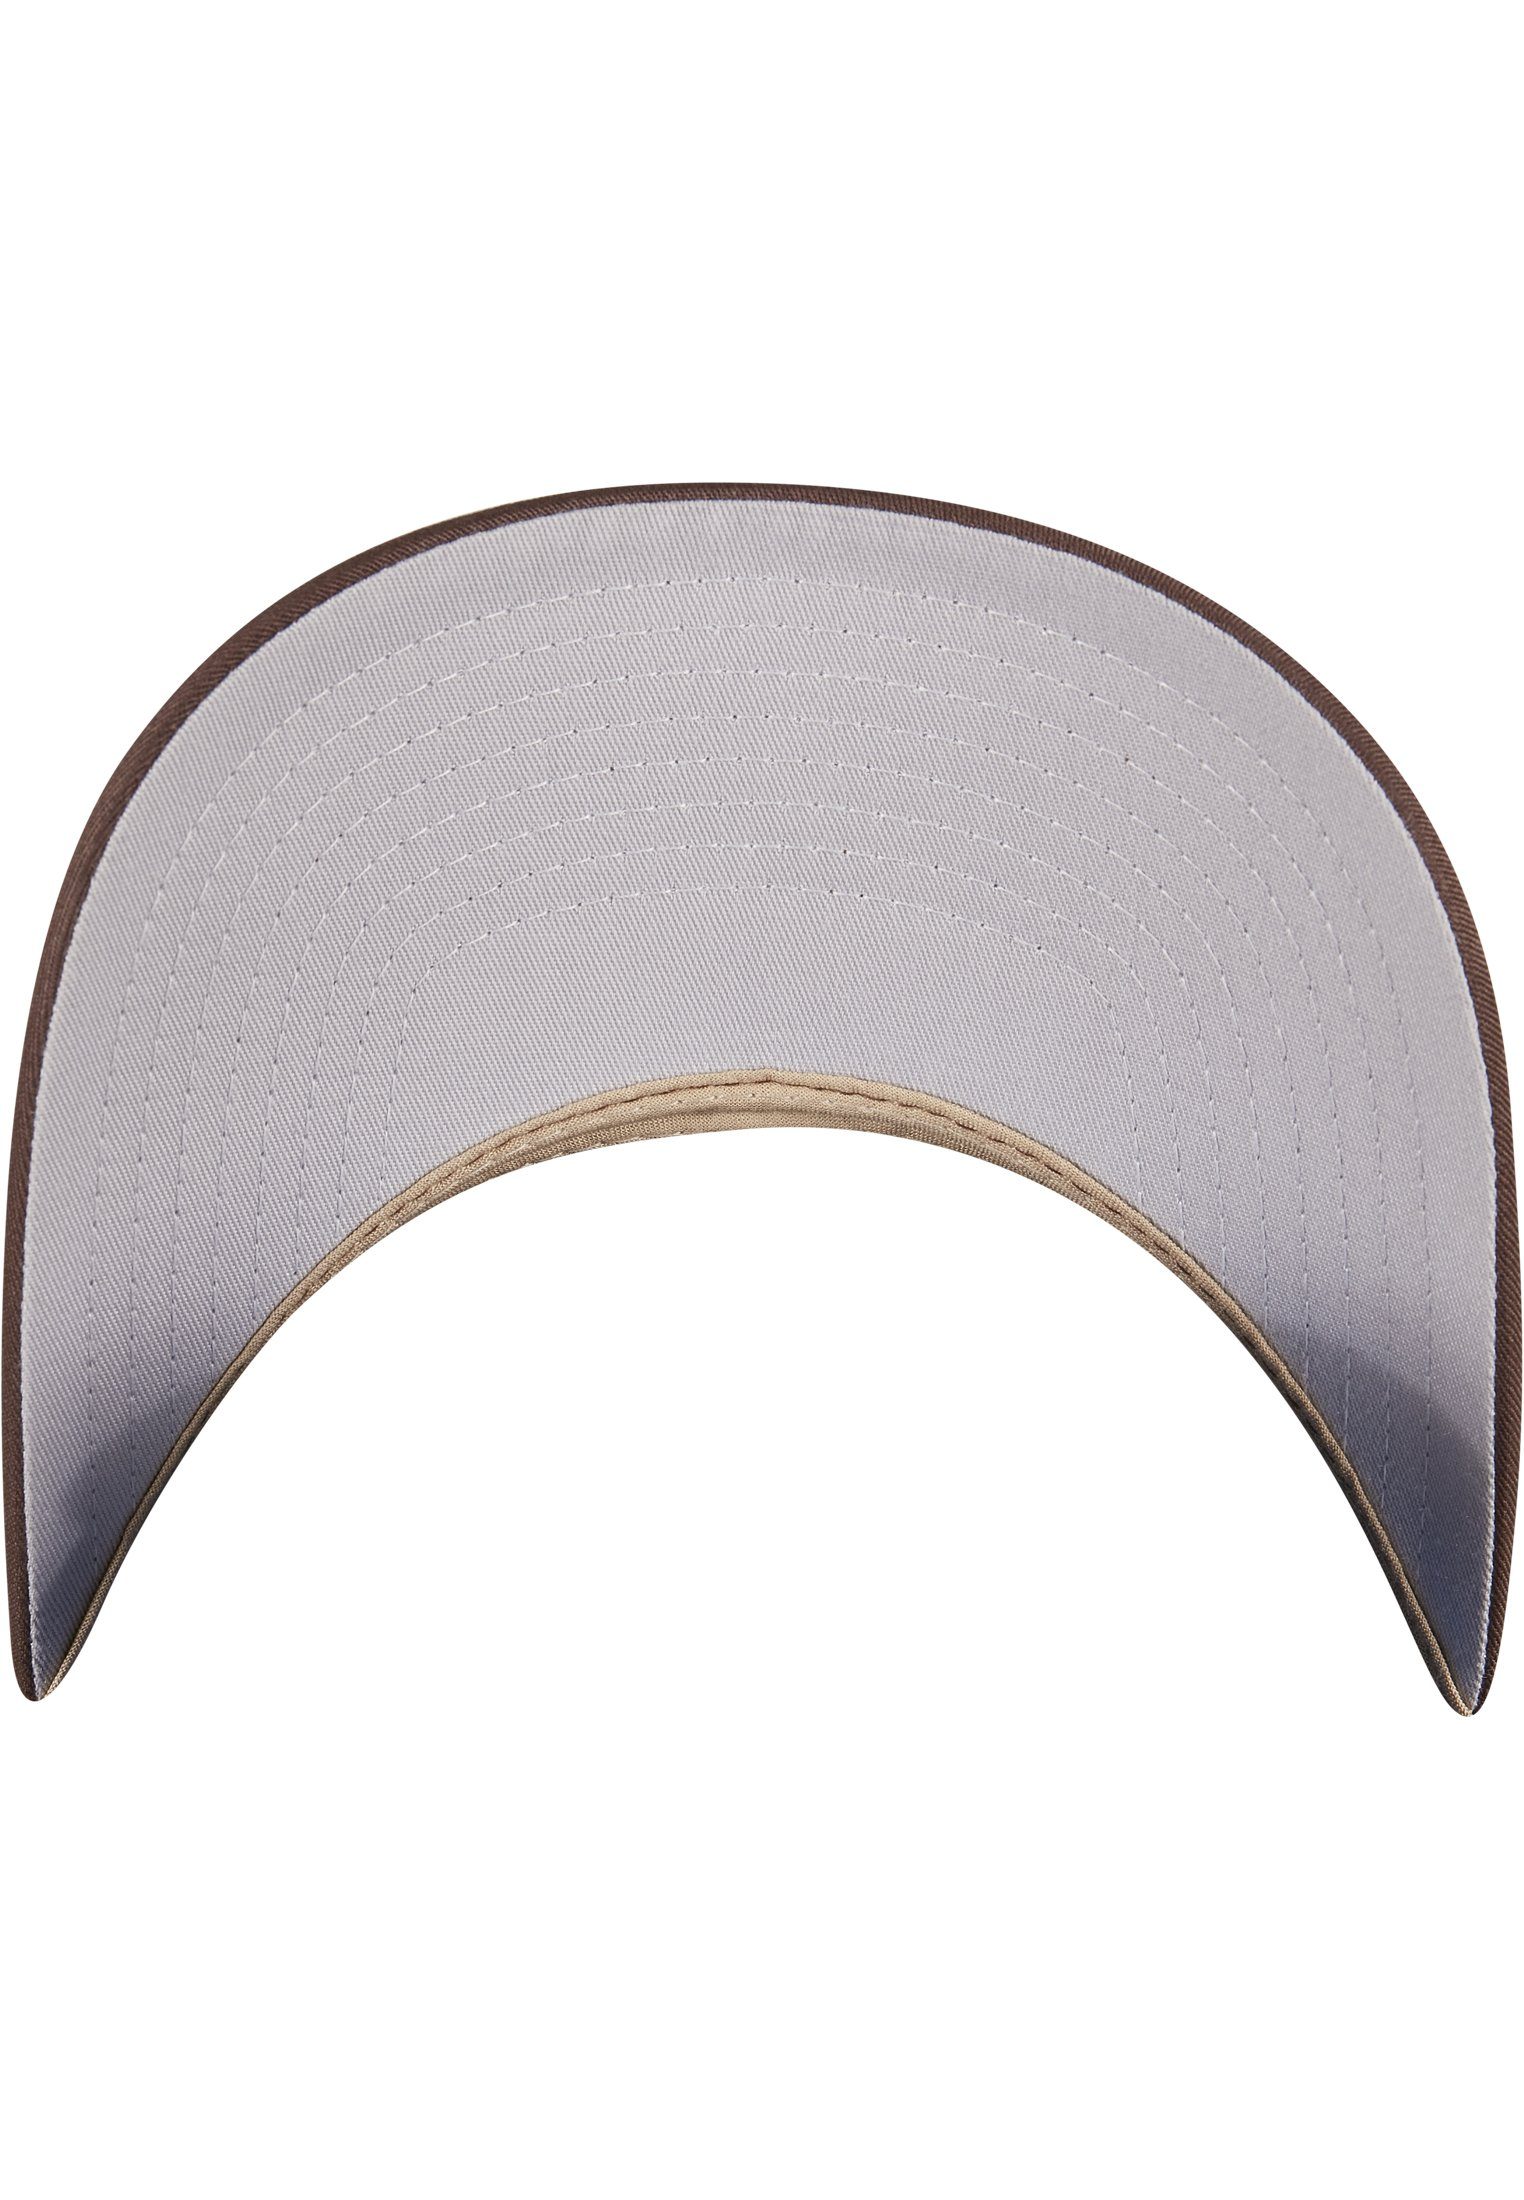 Flexfit Flex Cap Accessoires Cap 360° brown/khaki Omnimesh 2-Tone